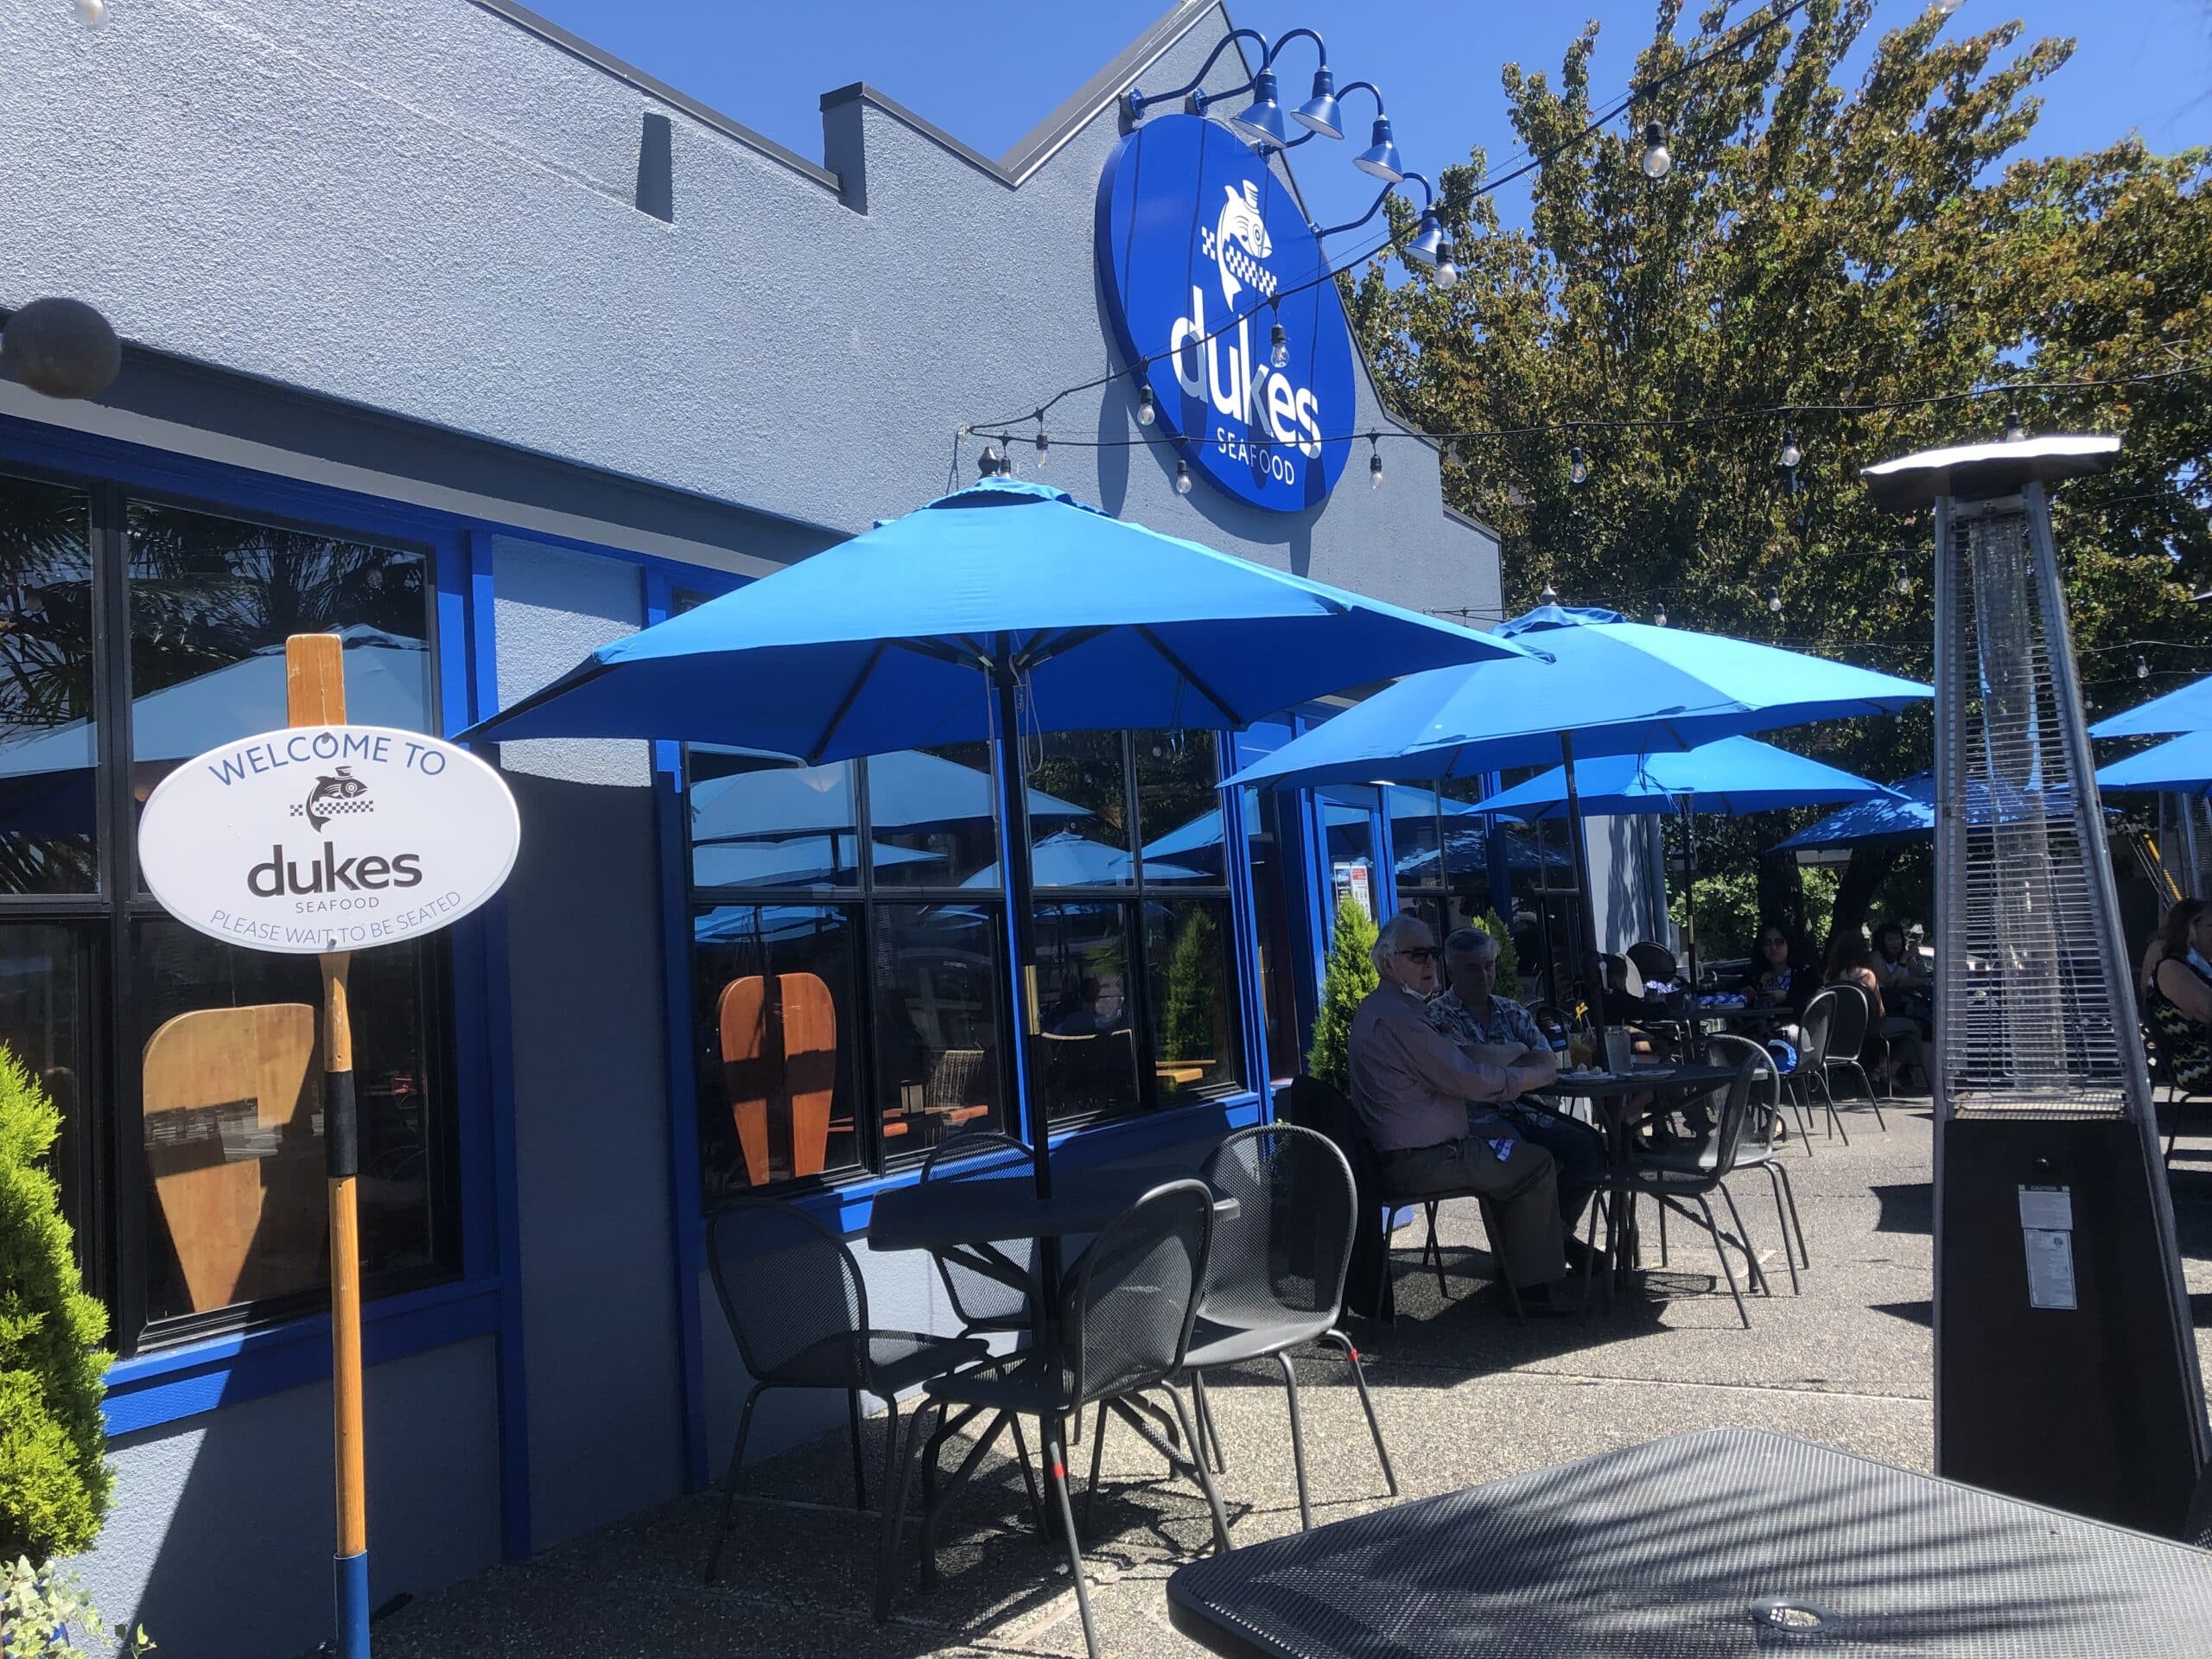 Patio at Duke's restaurant with blue umbrellas